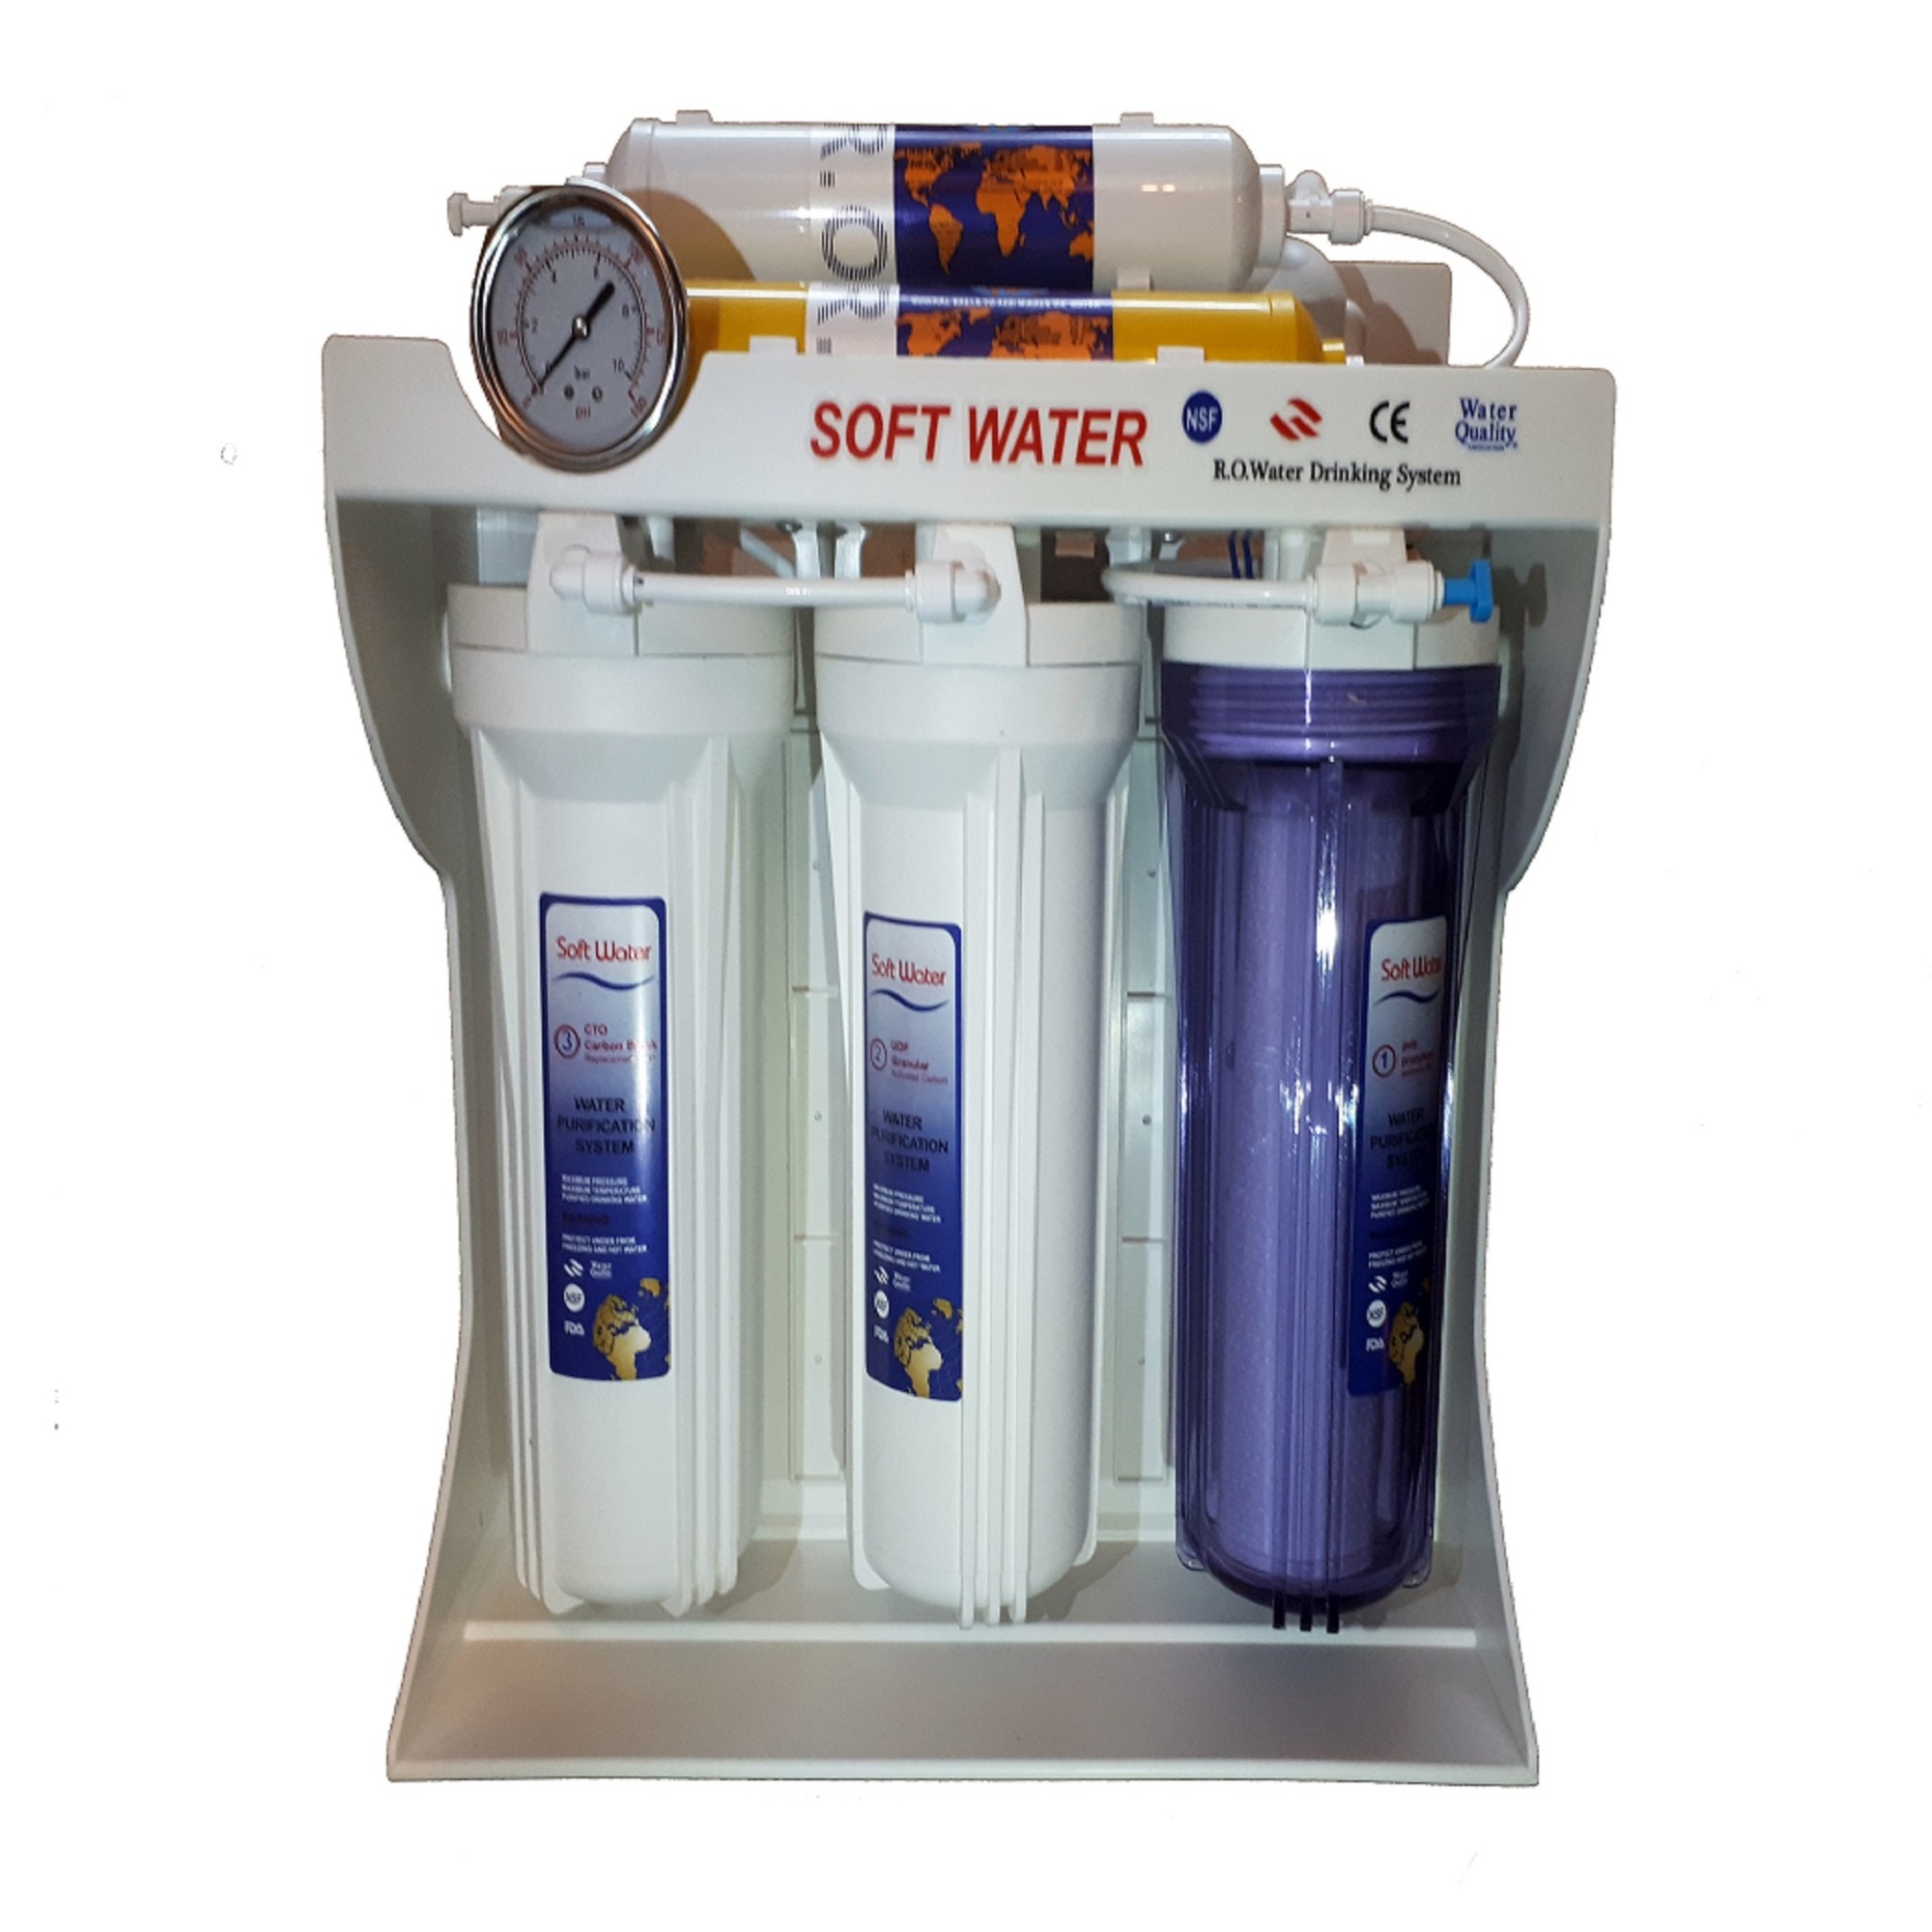 دستگاه تصفیه کننده آب خانگی سافت واتر مدل RO2500